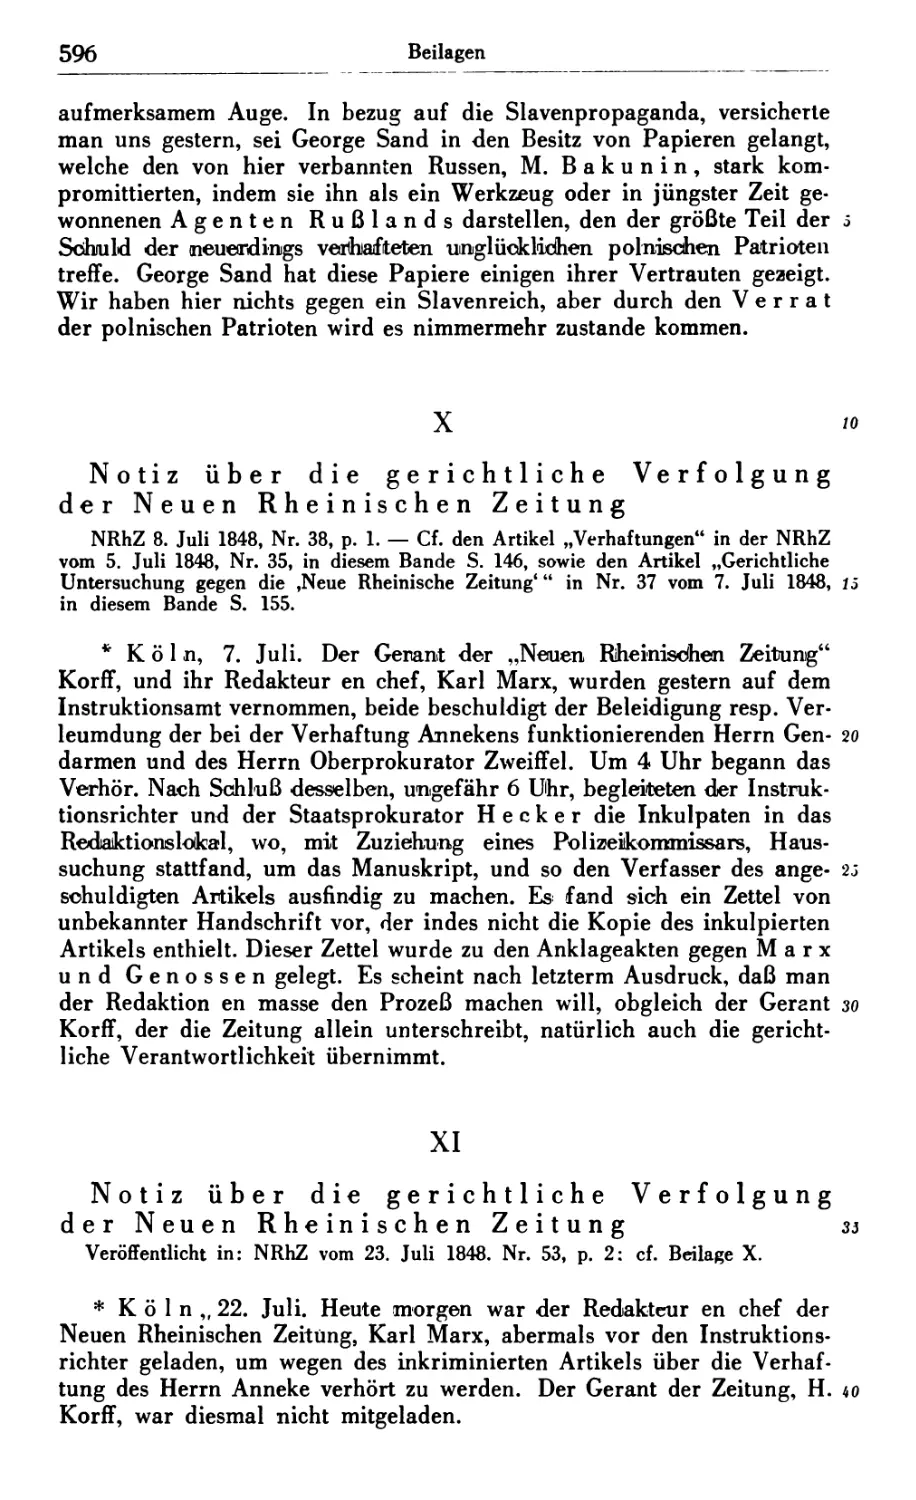 X. Notiz über die gerichtliche Verfolgung der Neuen Rheinischen Zeitung
XI. Notiz über die gerichtliche Verfolgung der Neuen Rheinischen Zeitung